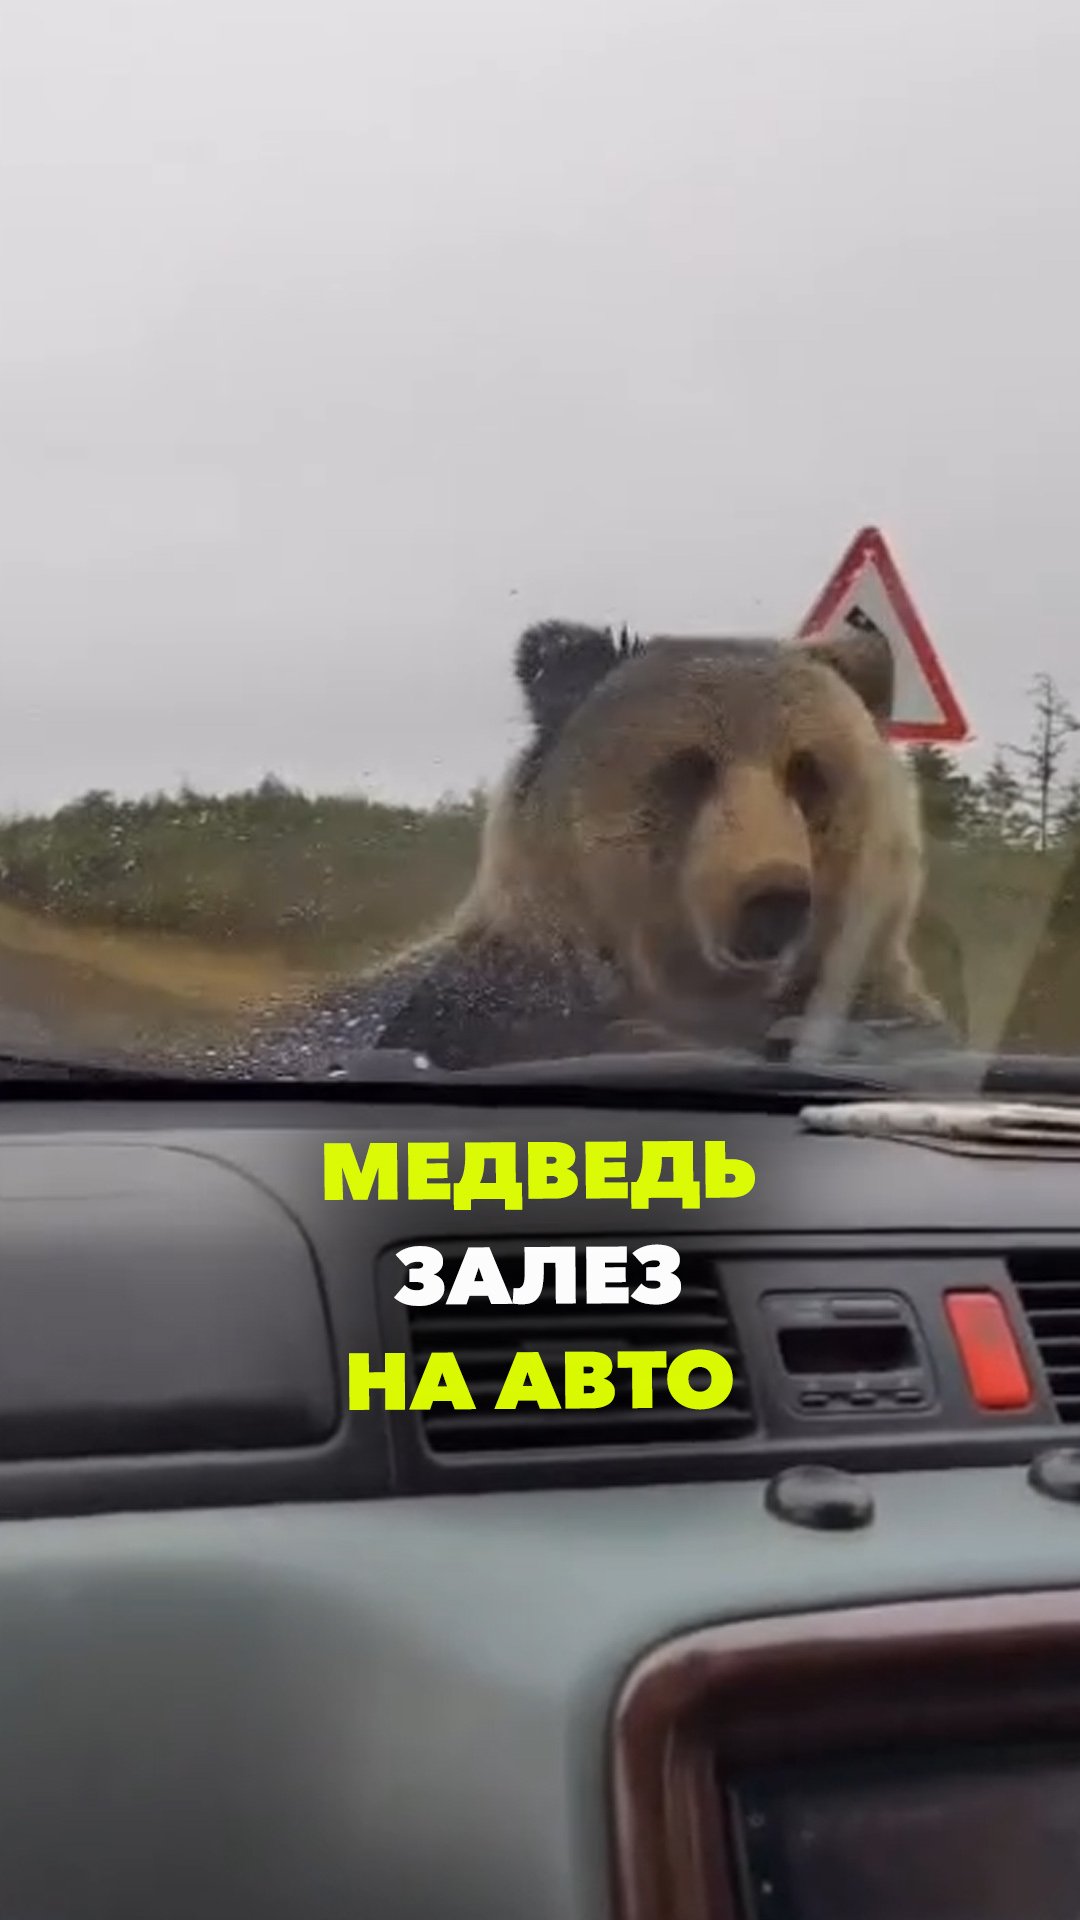 Закон – тайга, прокурор – медведь: на Сахалине косолапый обследовал авто местных жителей